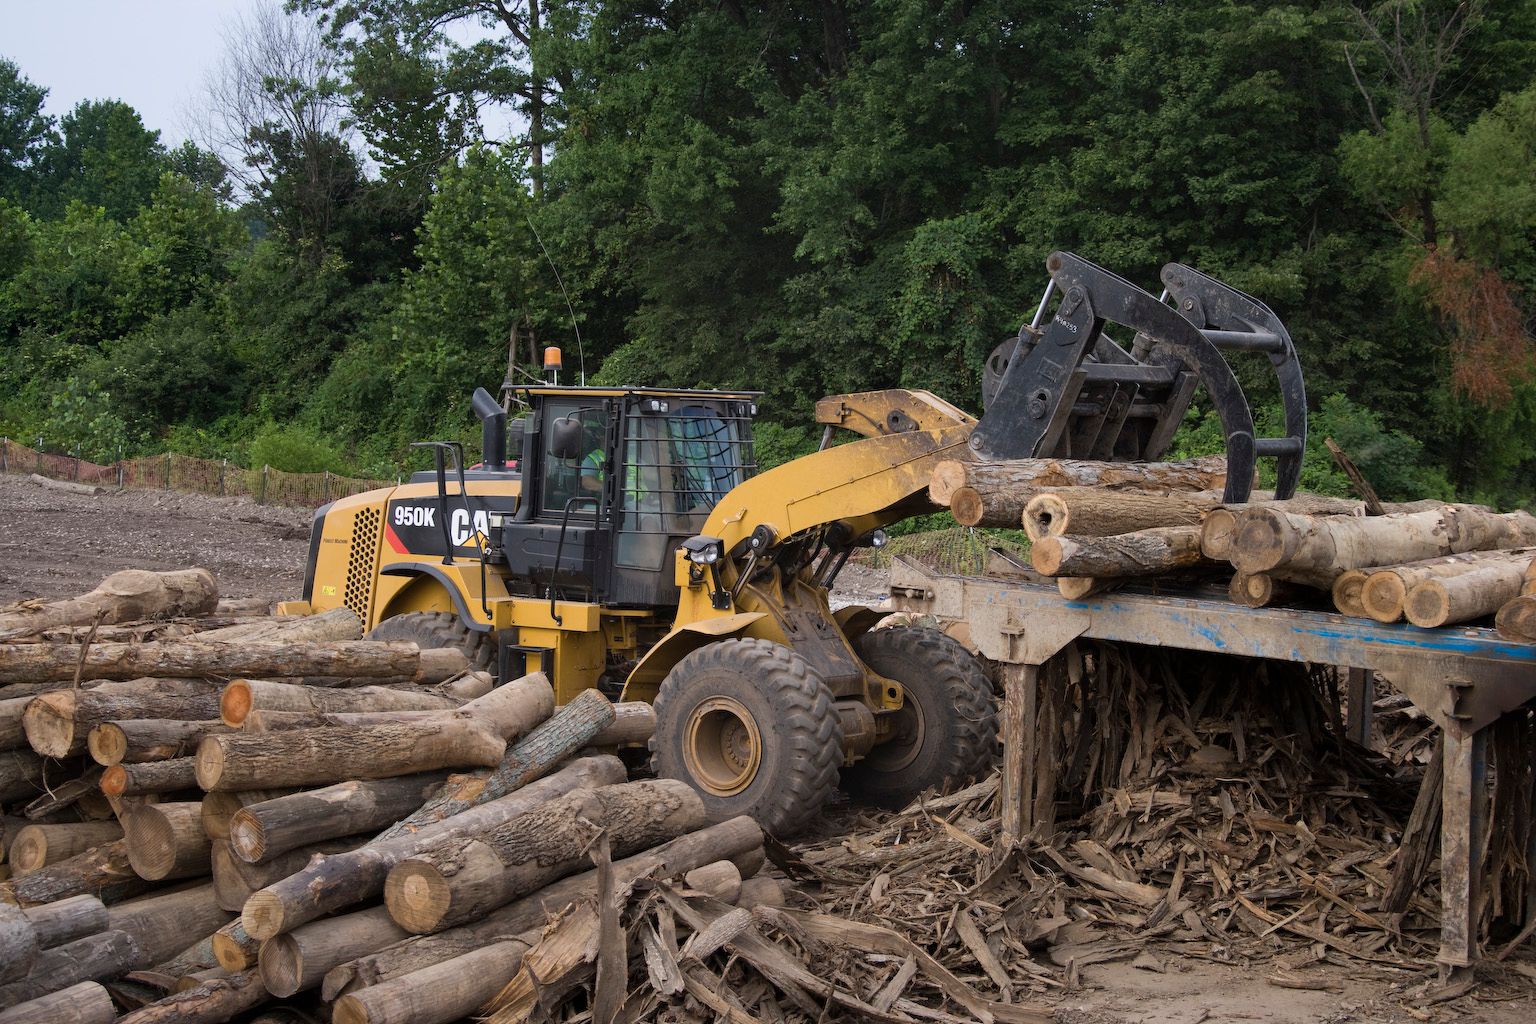 1524mm (60in) Log & Lumber Fork